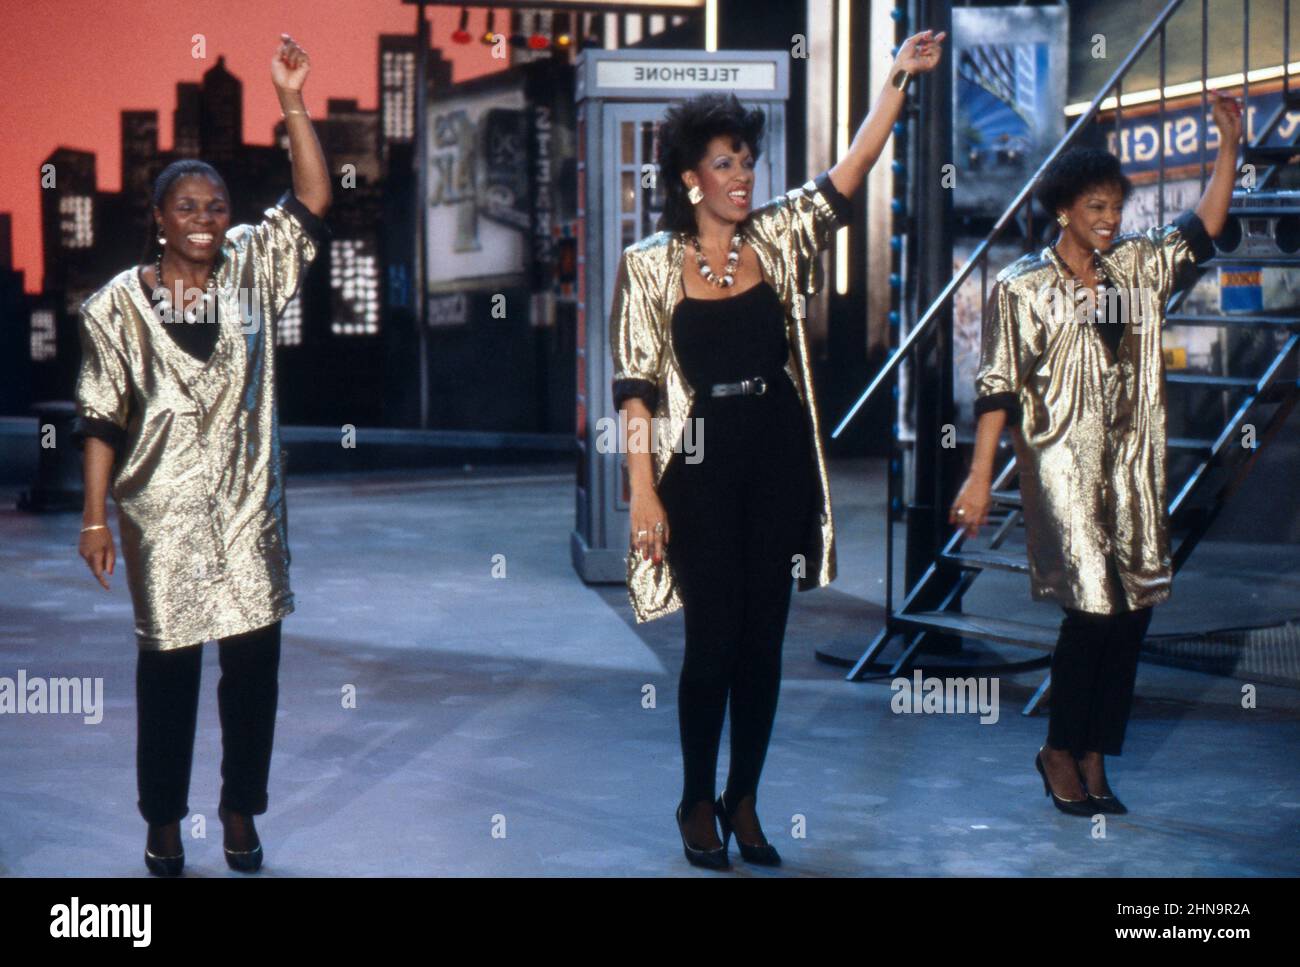 Les trois degrés, amerikanisches Soultrio, BEI einem Auftritt im deutschen Fernsehen, Deutschland 1986. Banque D'Images